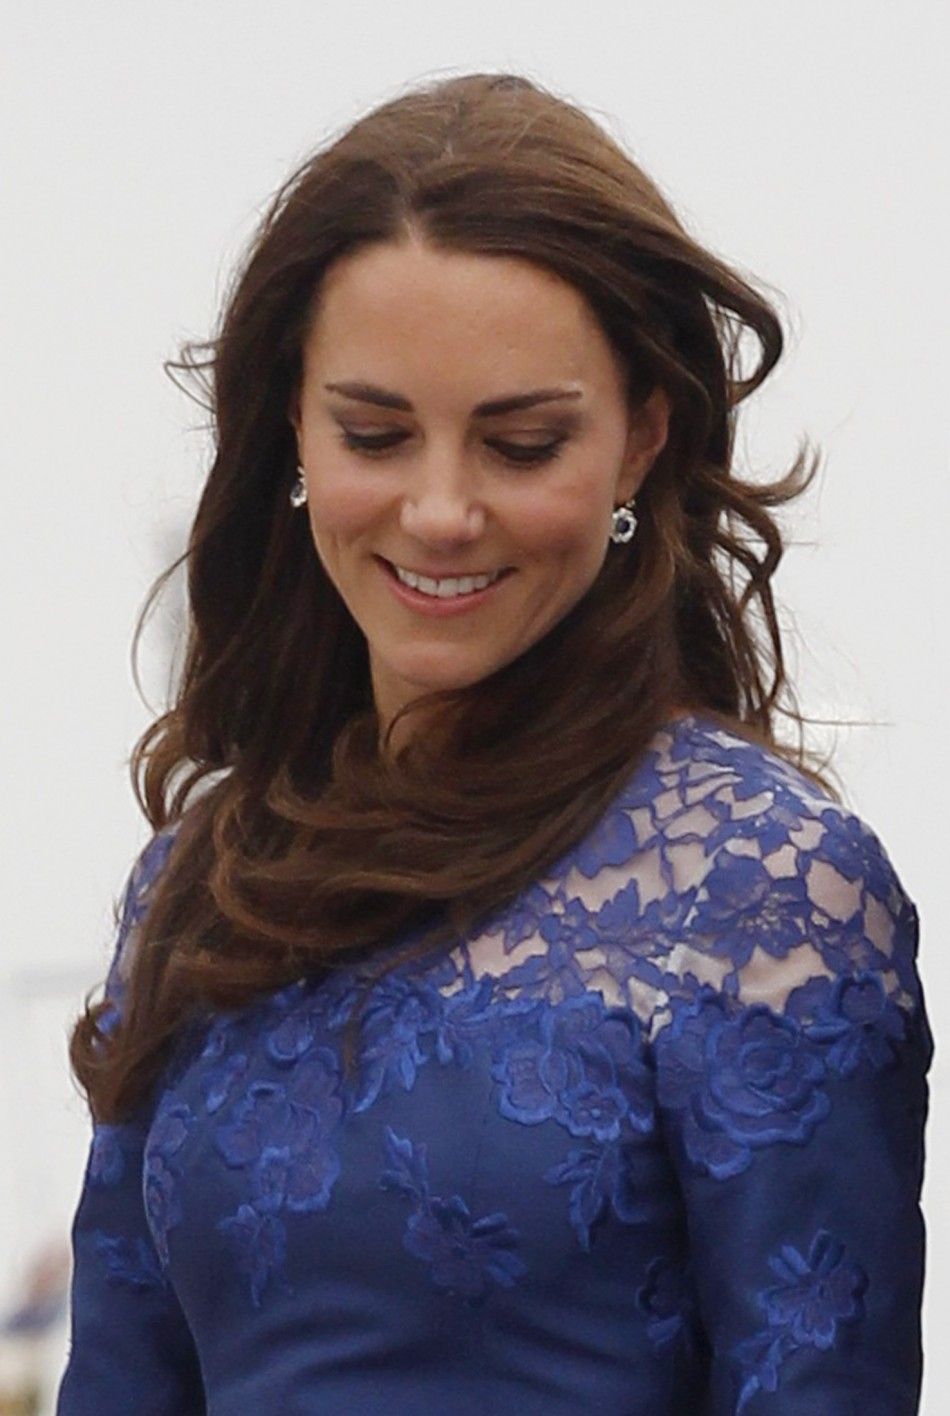 Kate Middleton, the Duchess of Cambridge